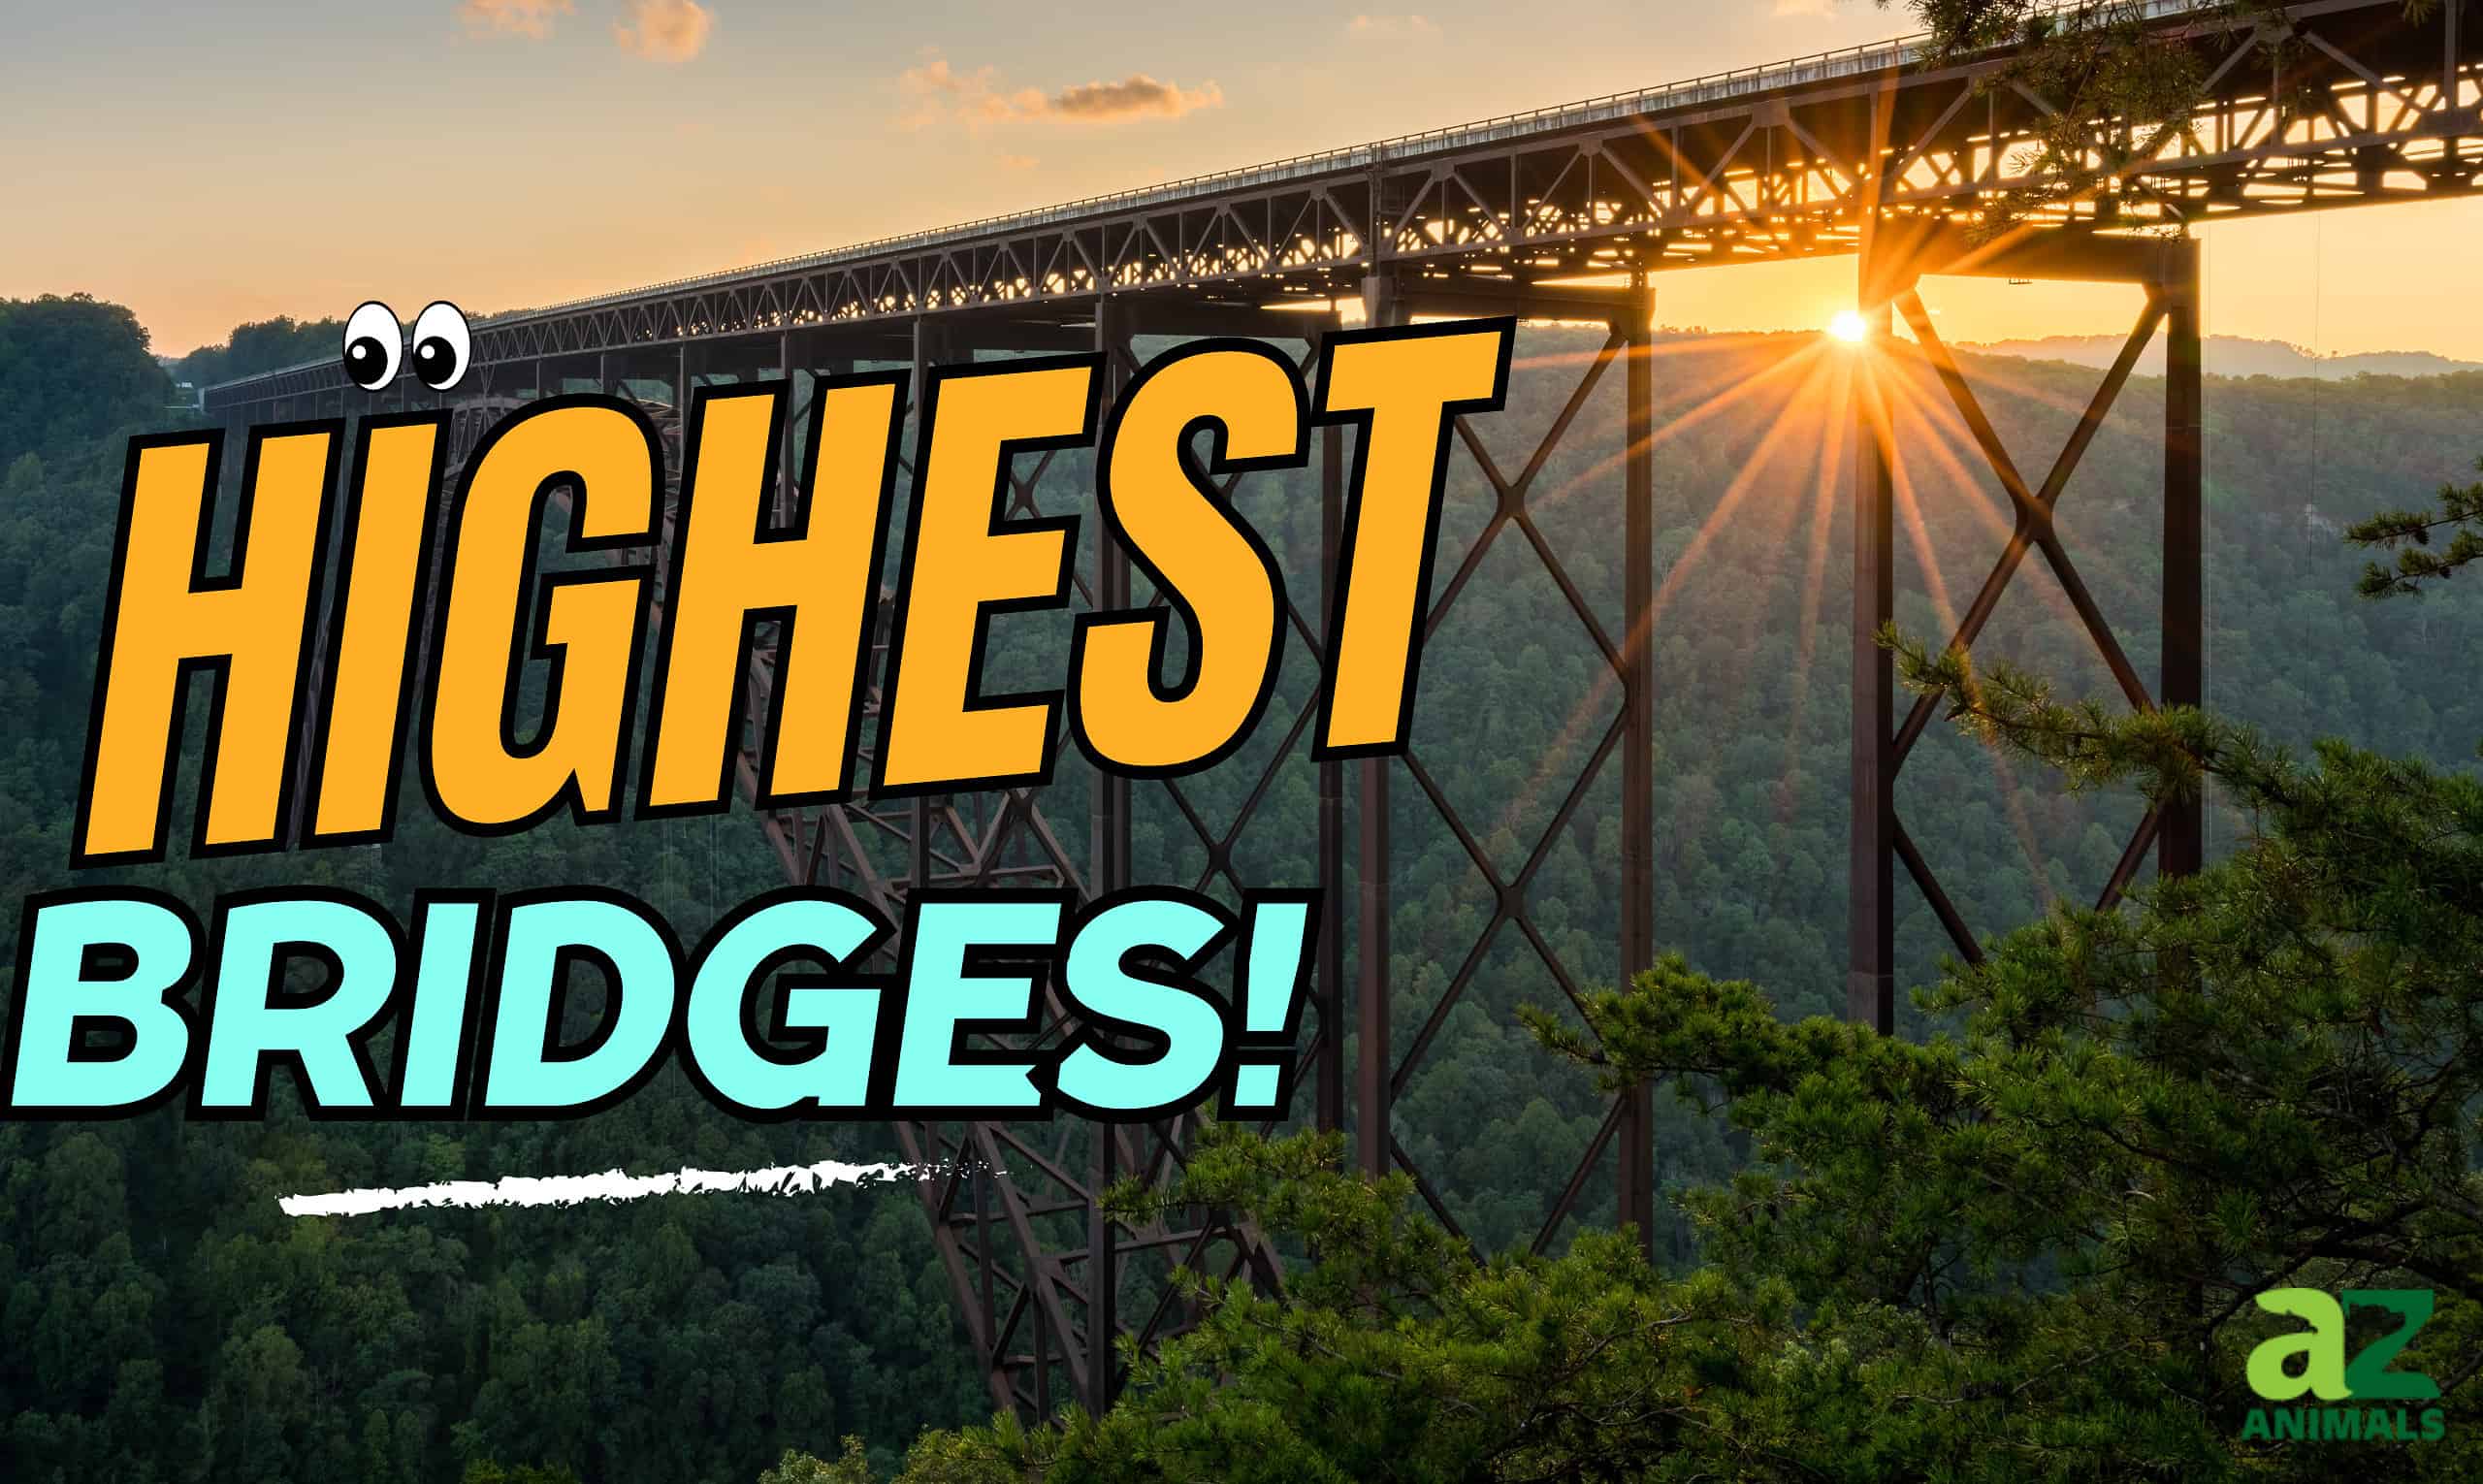 Highest Bridges